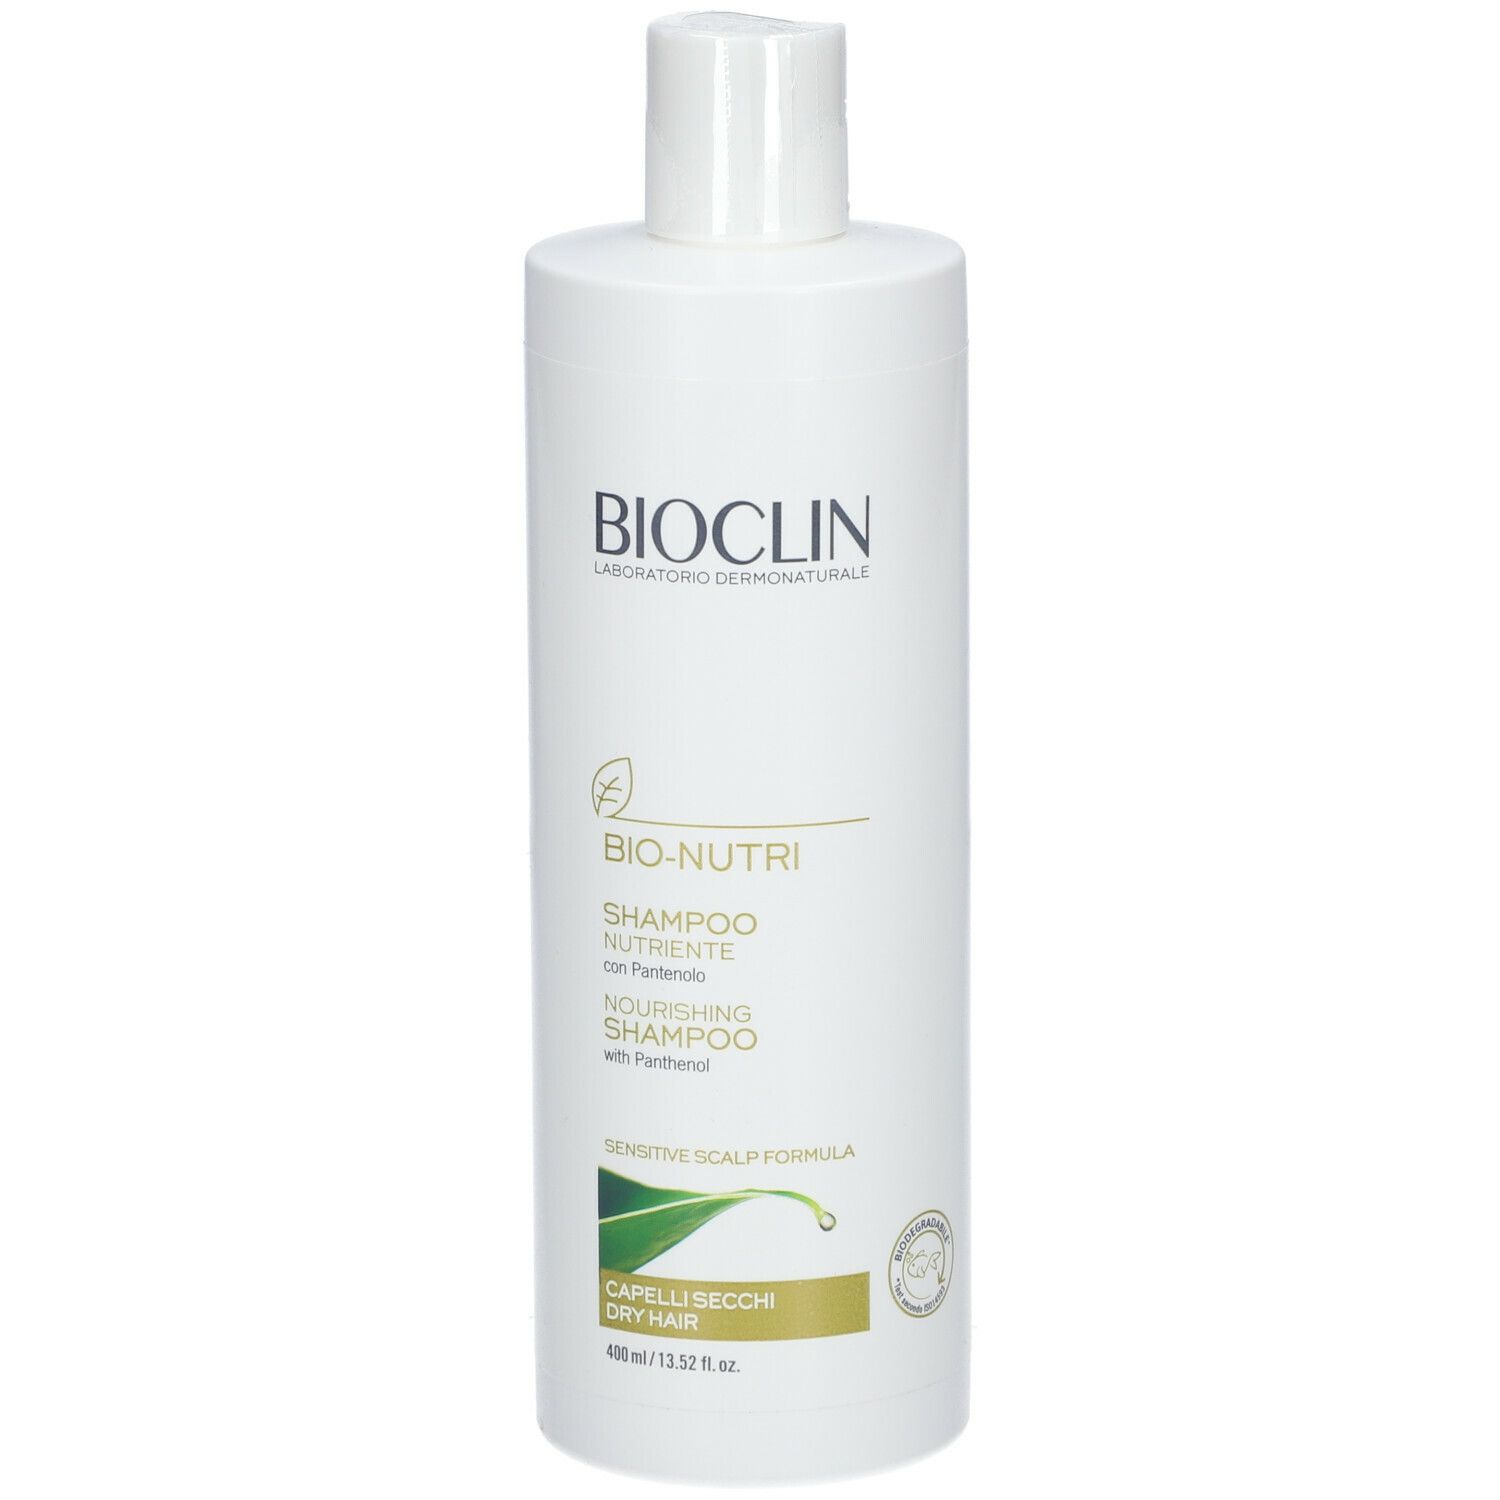 BIOCLIN Bio Nutri Shampoo Nutriente